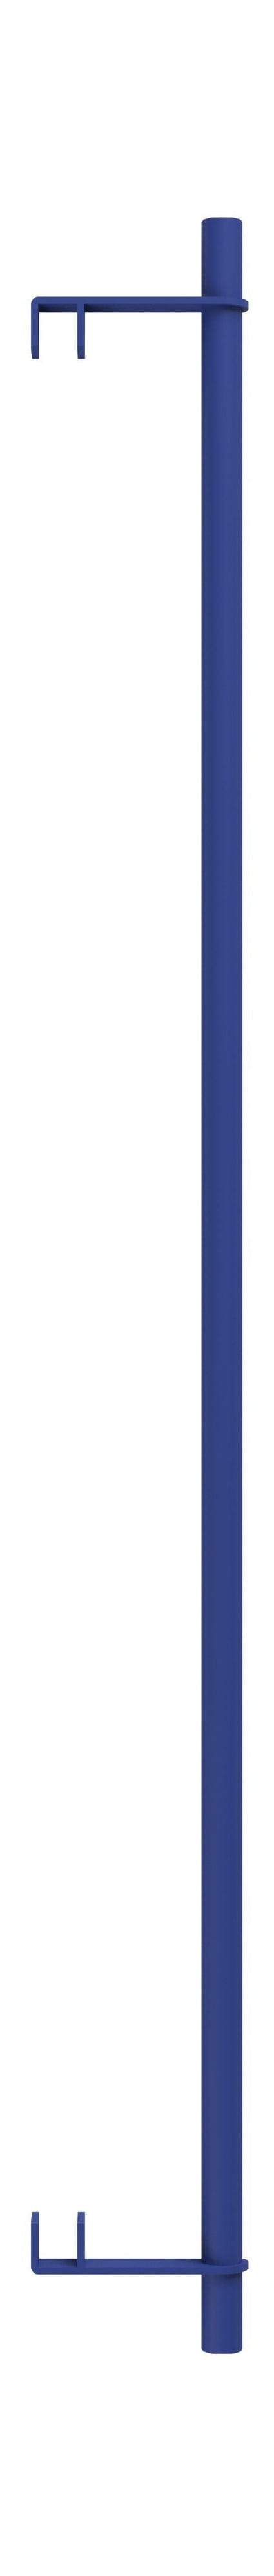 Sistema de estantería Moebe/Barra de ropa de estantería de pared 85 cm, azul profundo